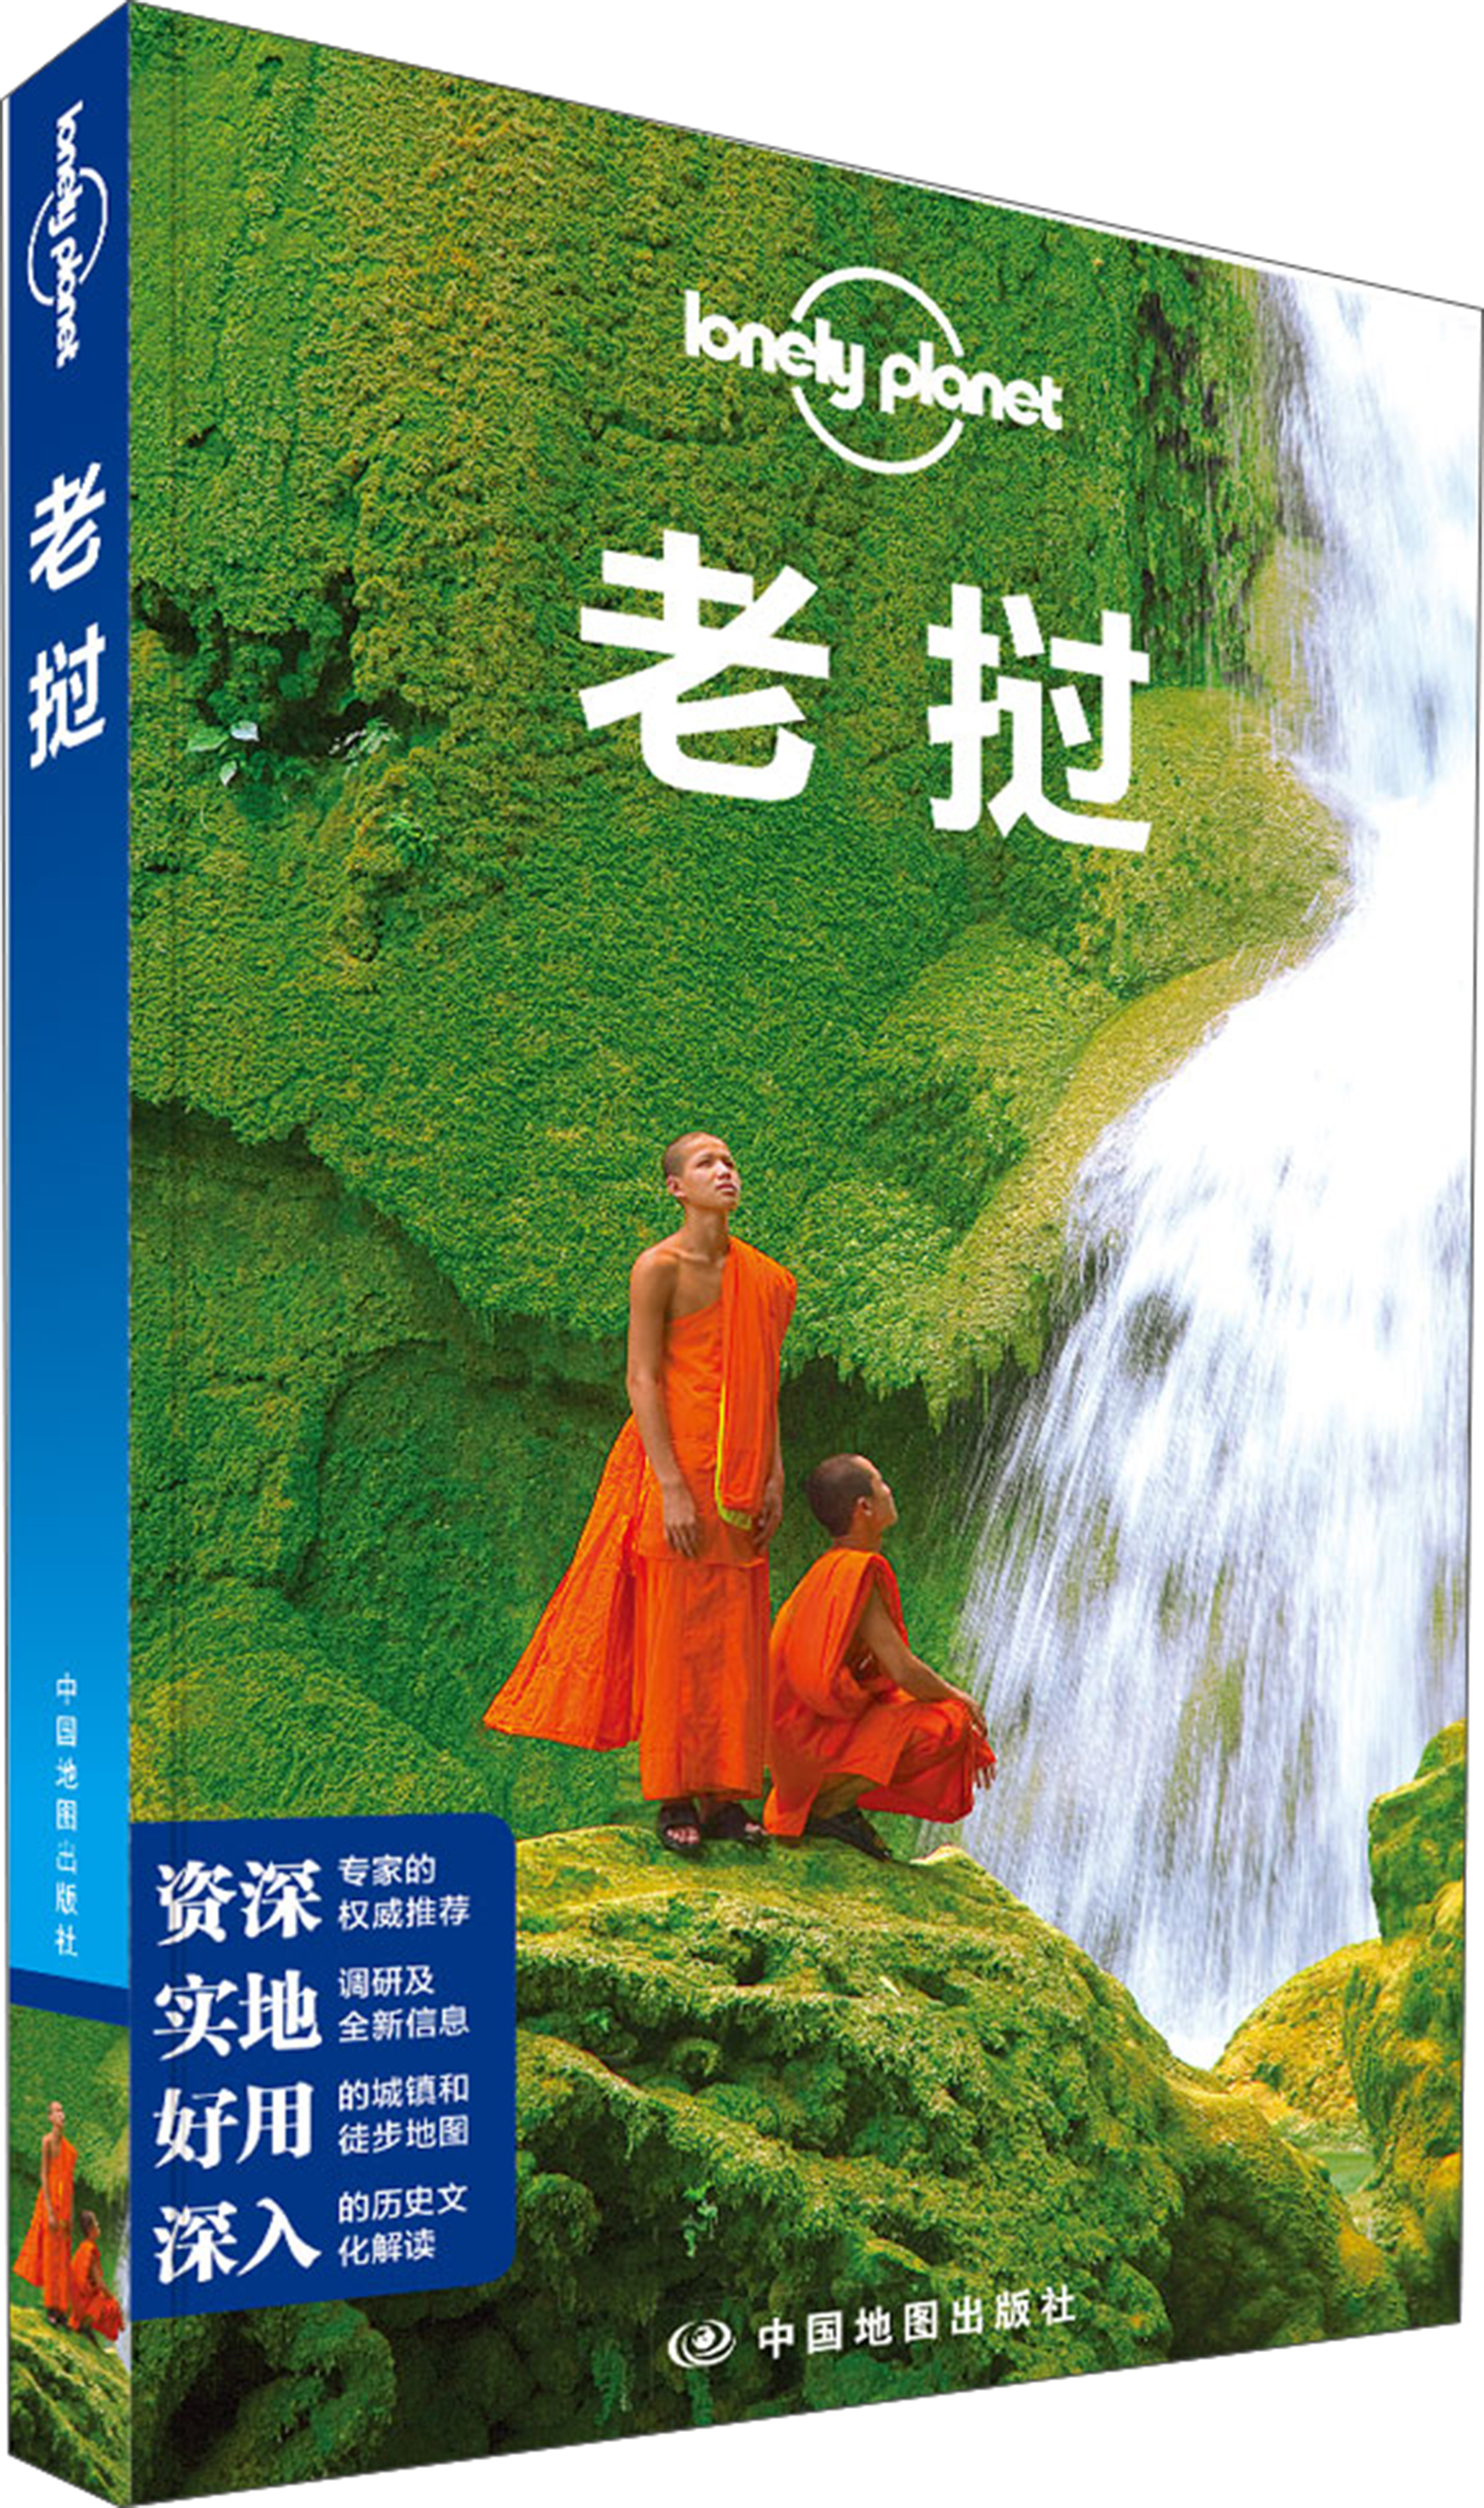 孤独星球Lonely Planet旅行指南系列：老挝 word格式下载